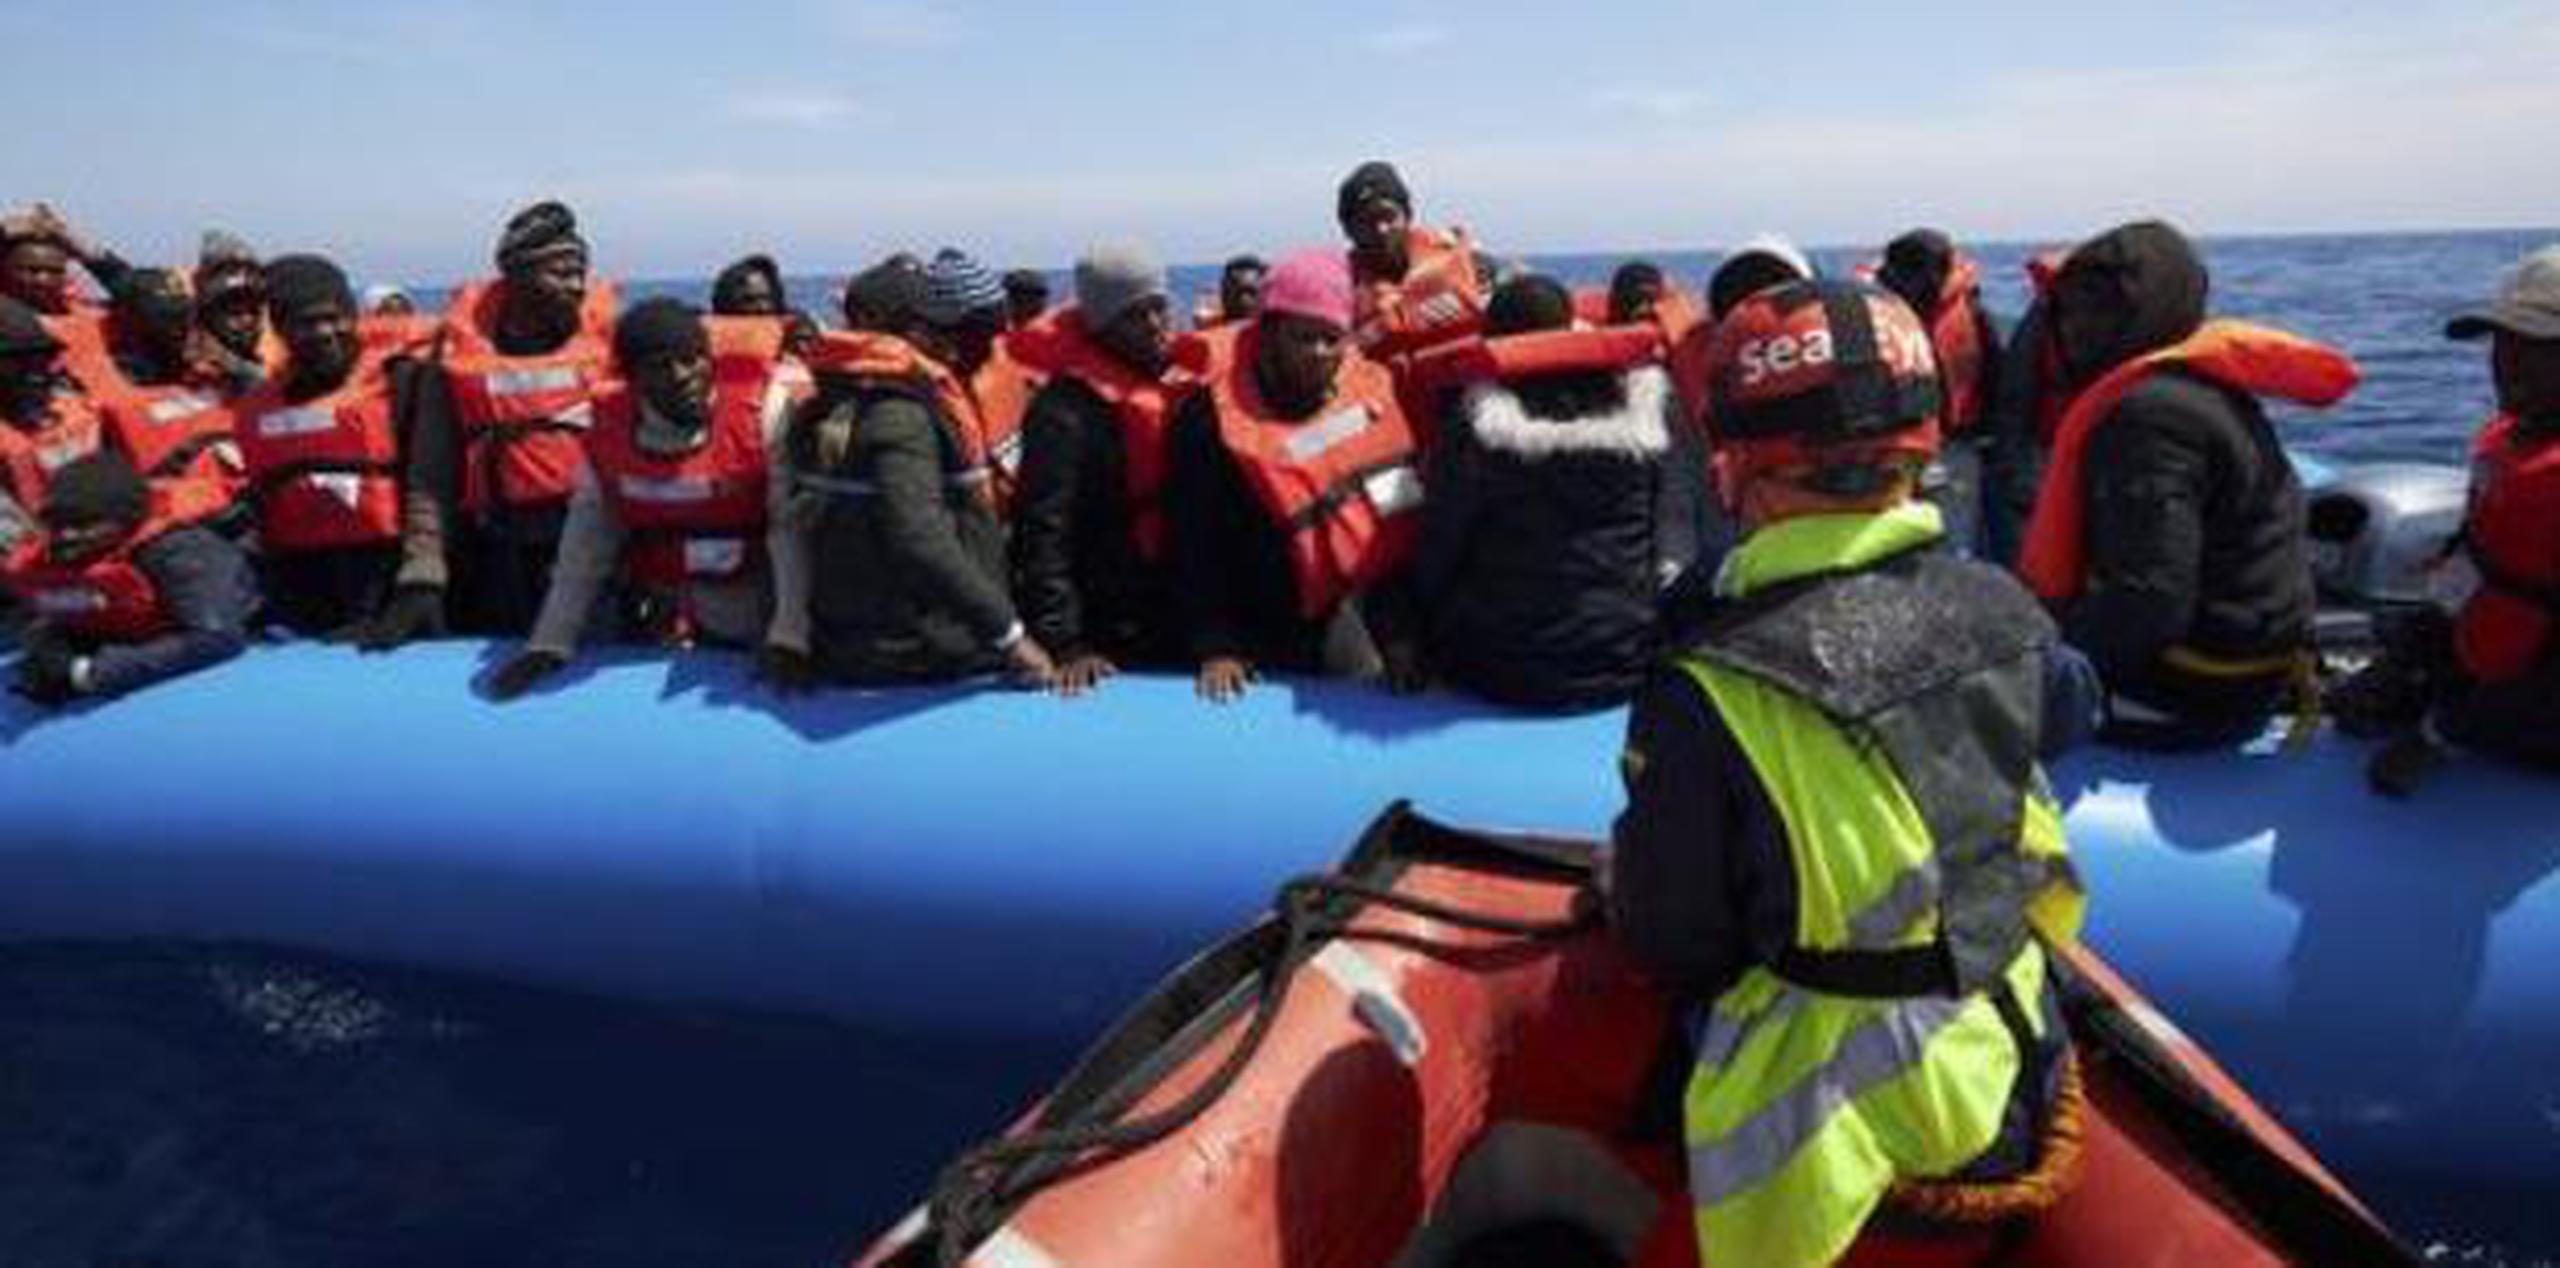 El grupo de ayuda humanitario alemán Sea-Eye se había quejado del empeoramiento de las condiciones para los 64 migrantes. (Captura)